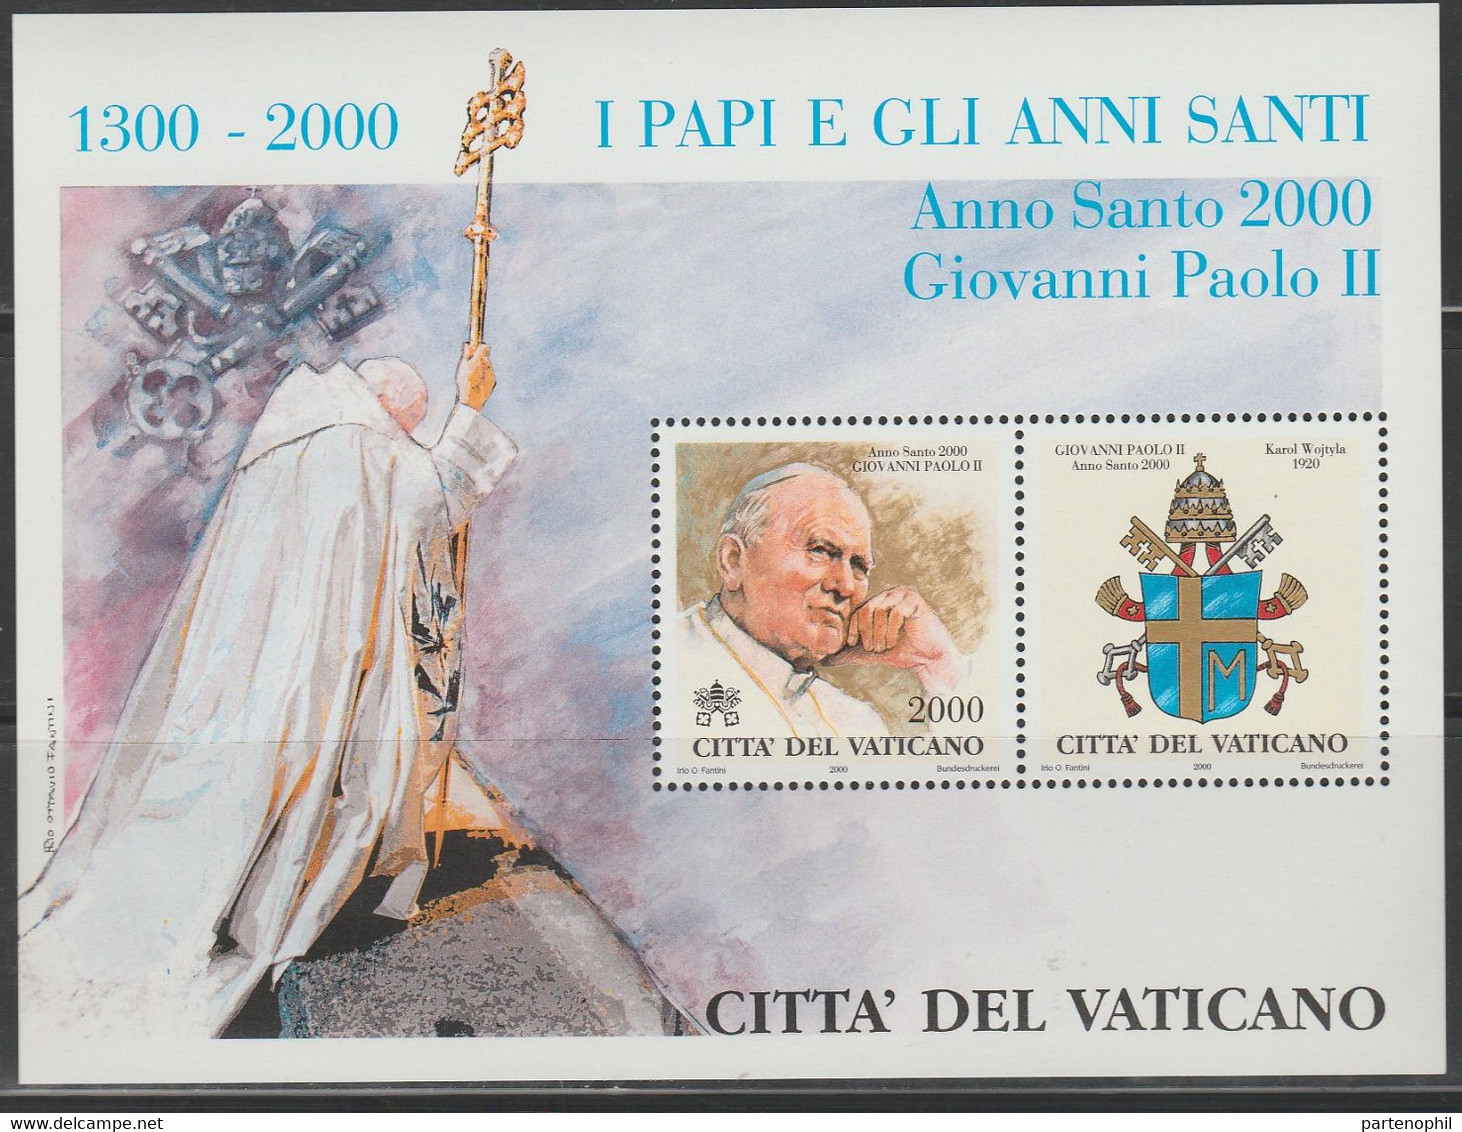 Vaticano 2000 - Papi E Gli Anni Santi  MNH - Booklets